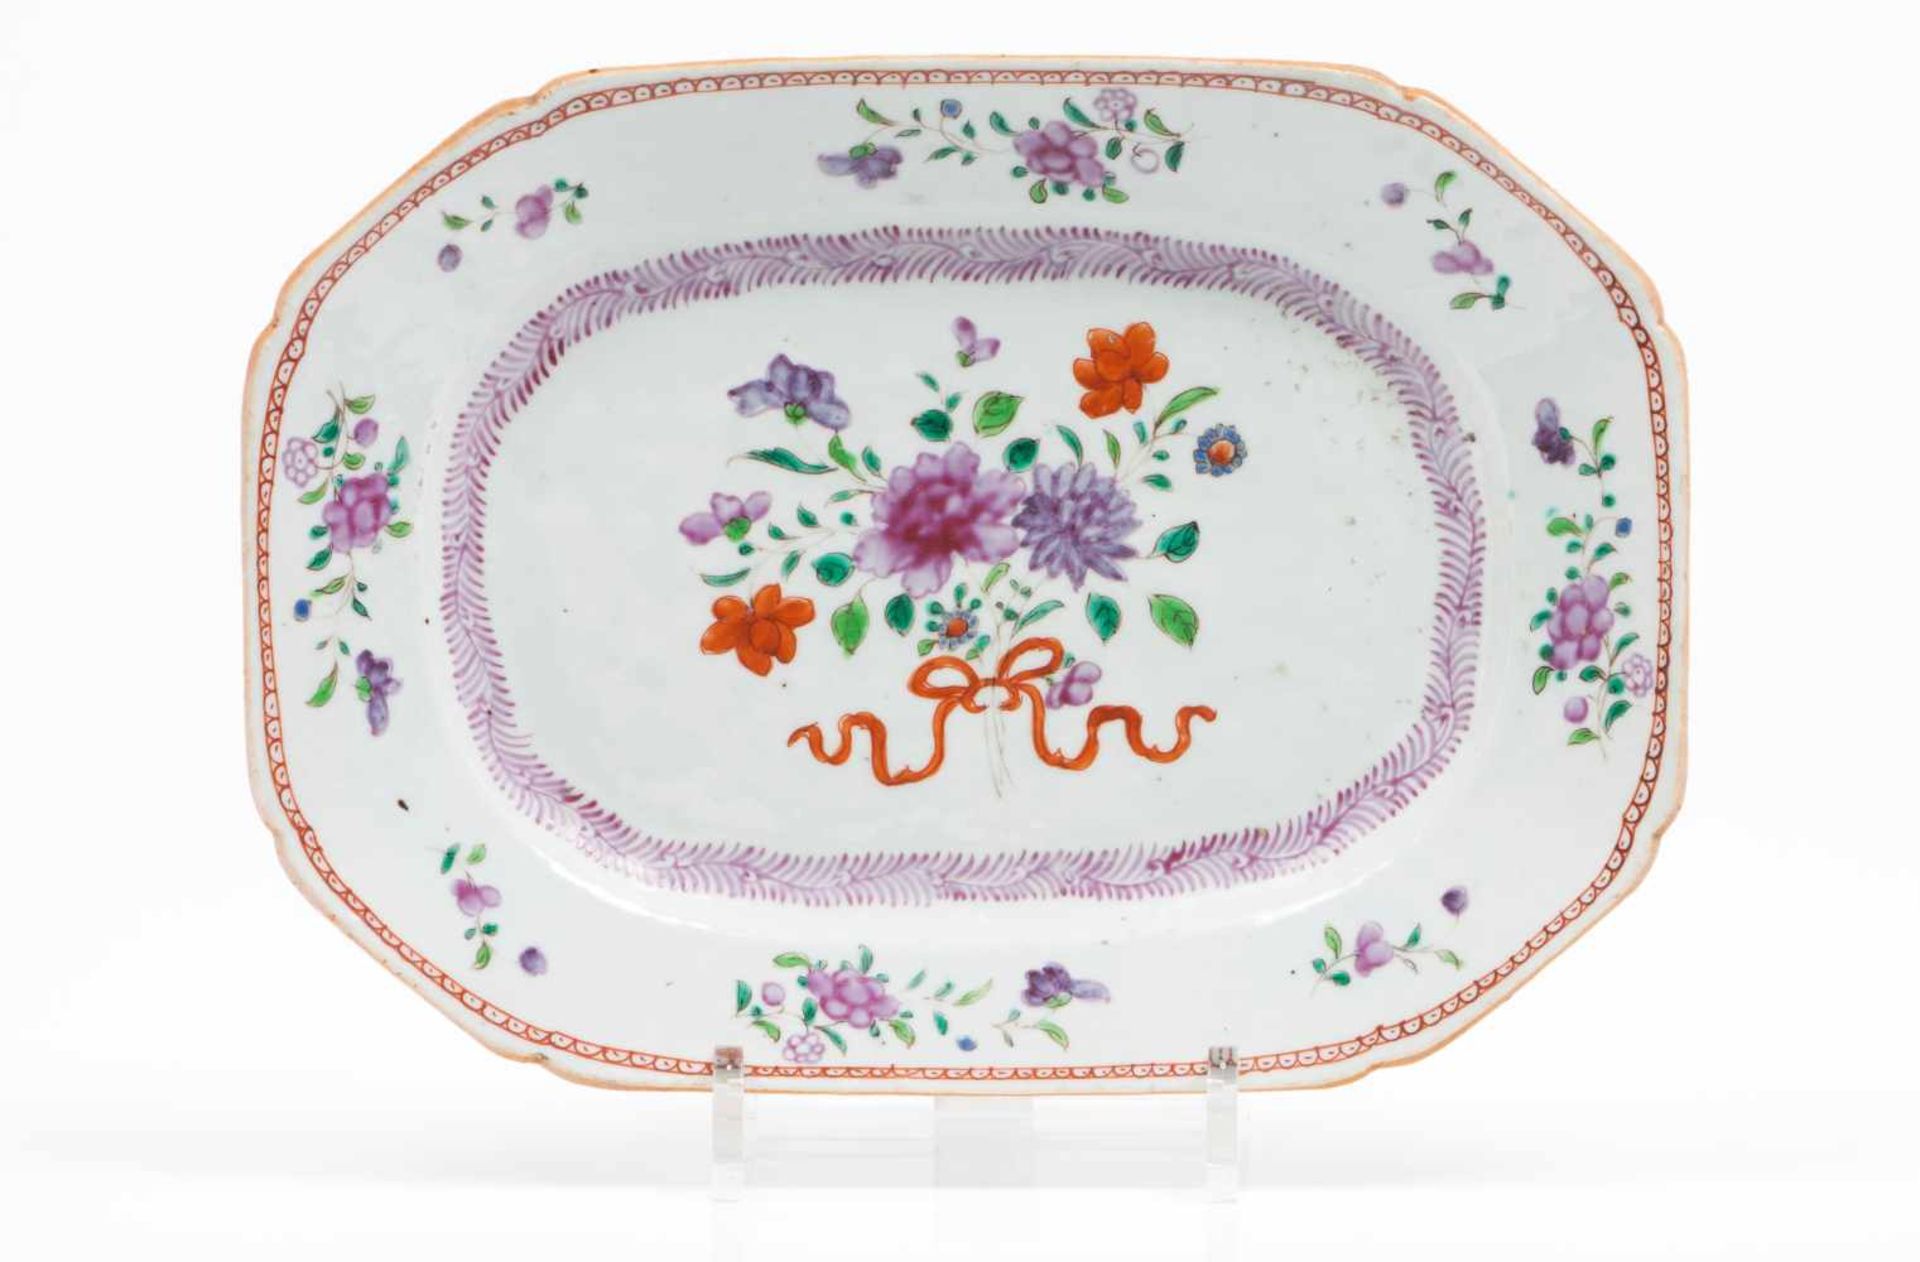 Octagonal platterChinese export porcelain Polychrome "Famille Rose" enamels decorationQianlong reign